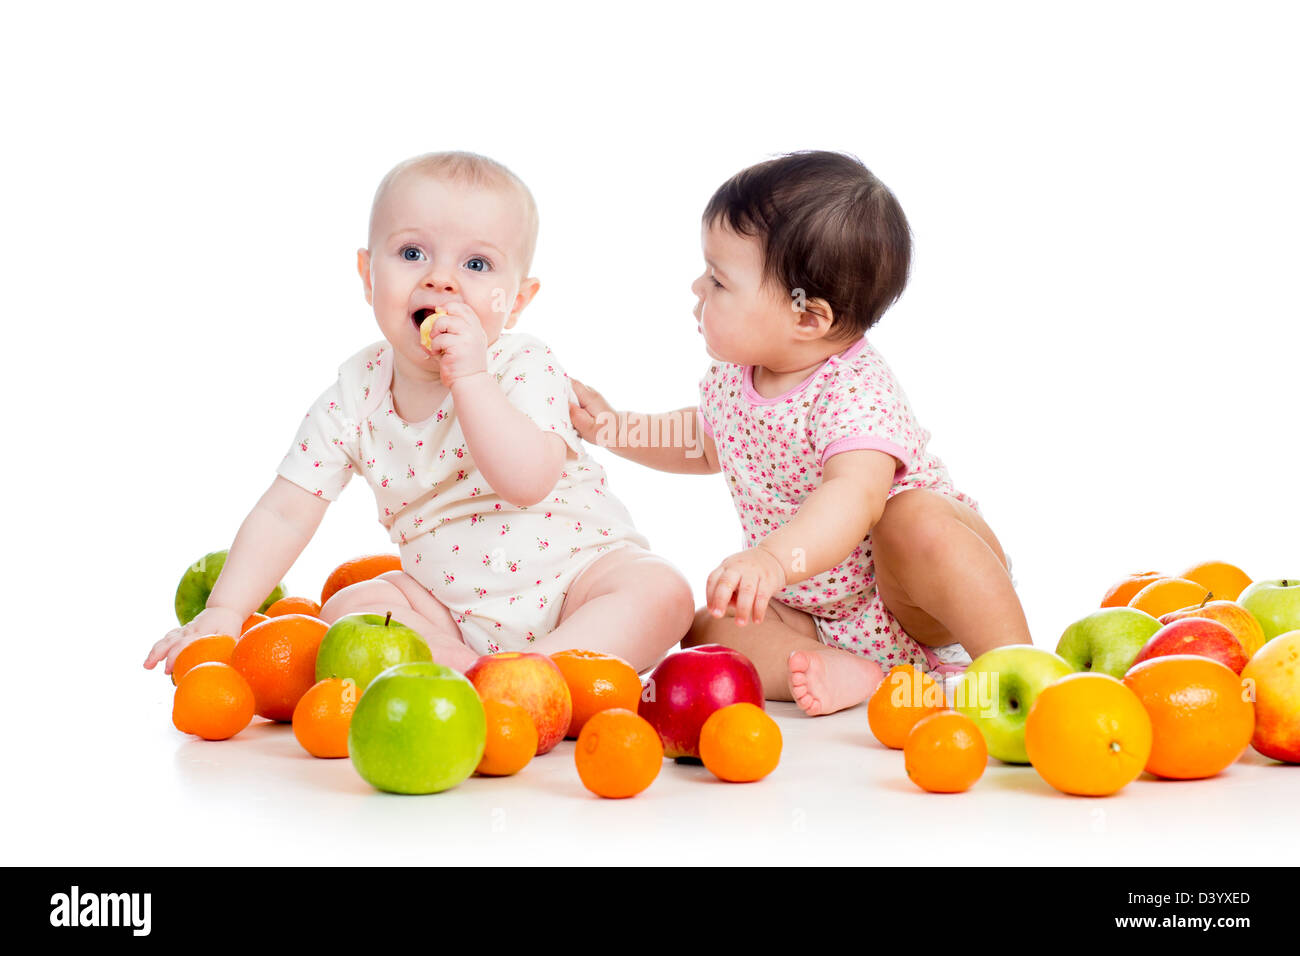 Funny kids babies consommer des aliments sains fruits isolé sur fond blanc Banque D'Images